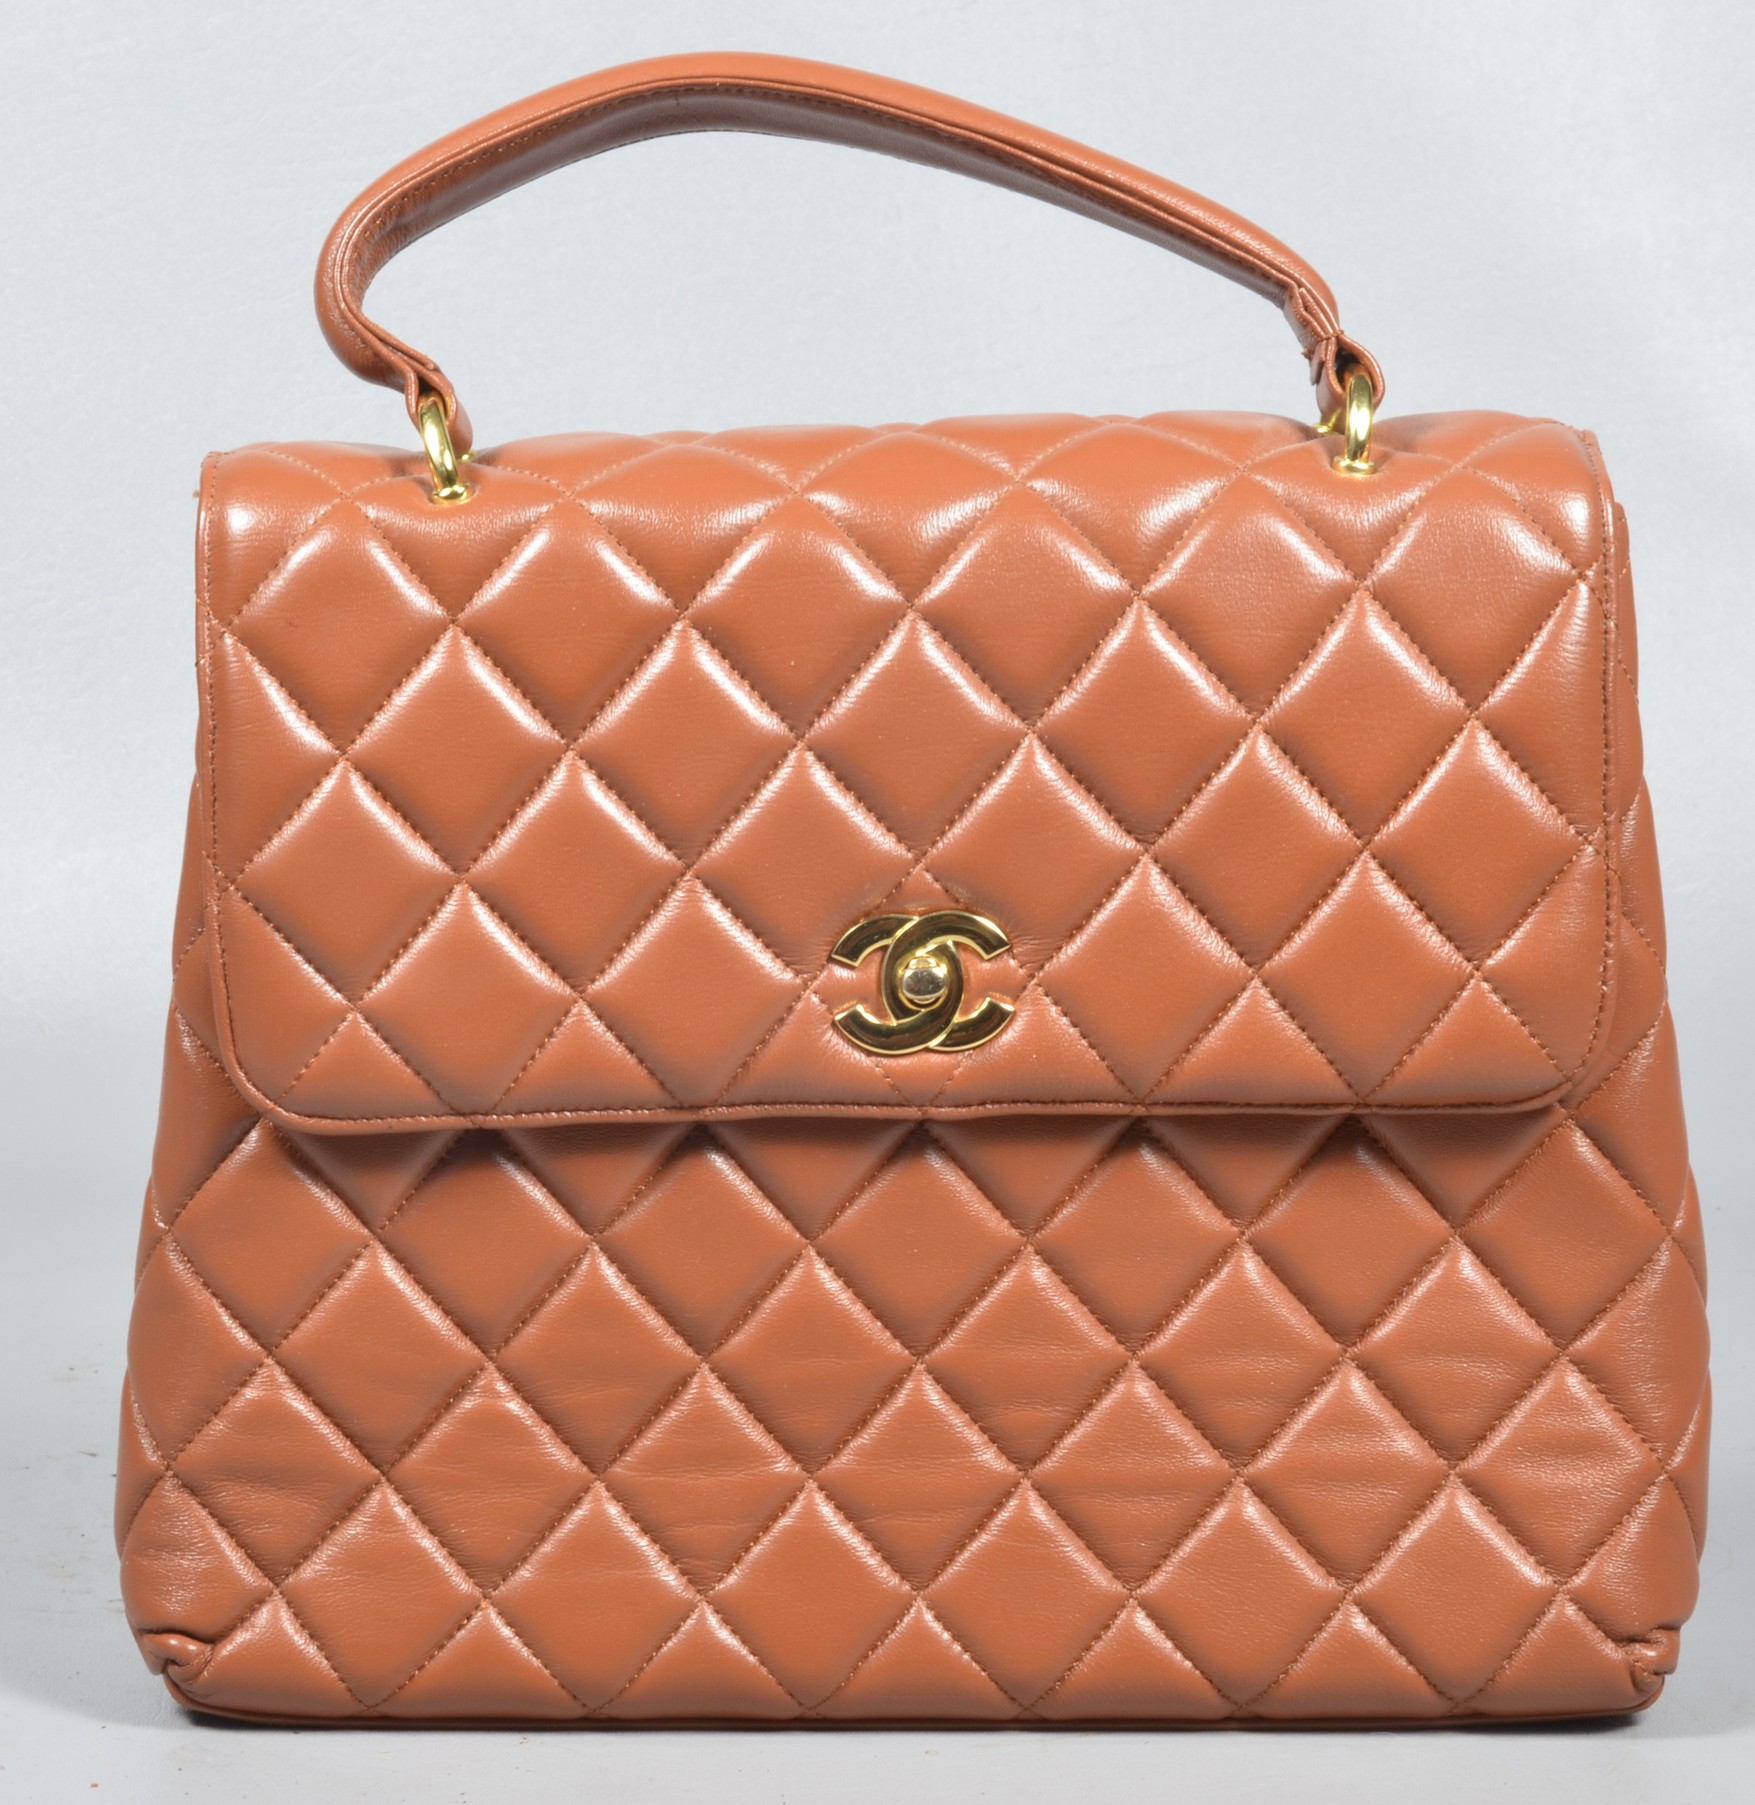 Chanel style Kelly flap purse  3b66bd